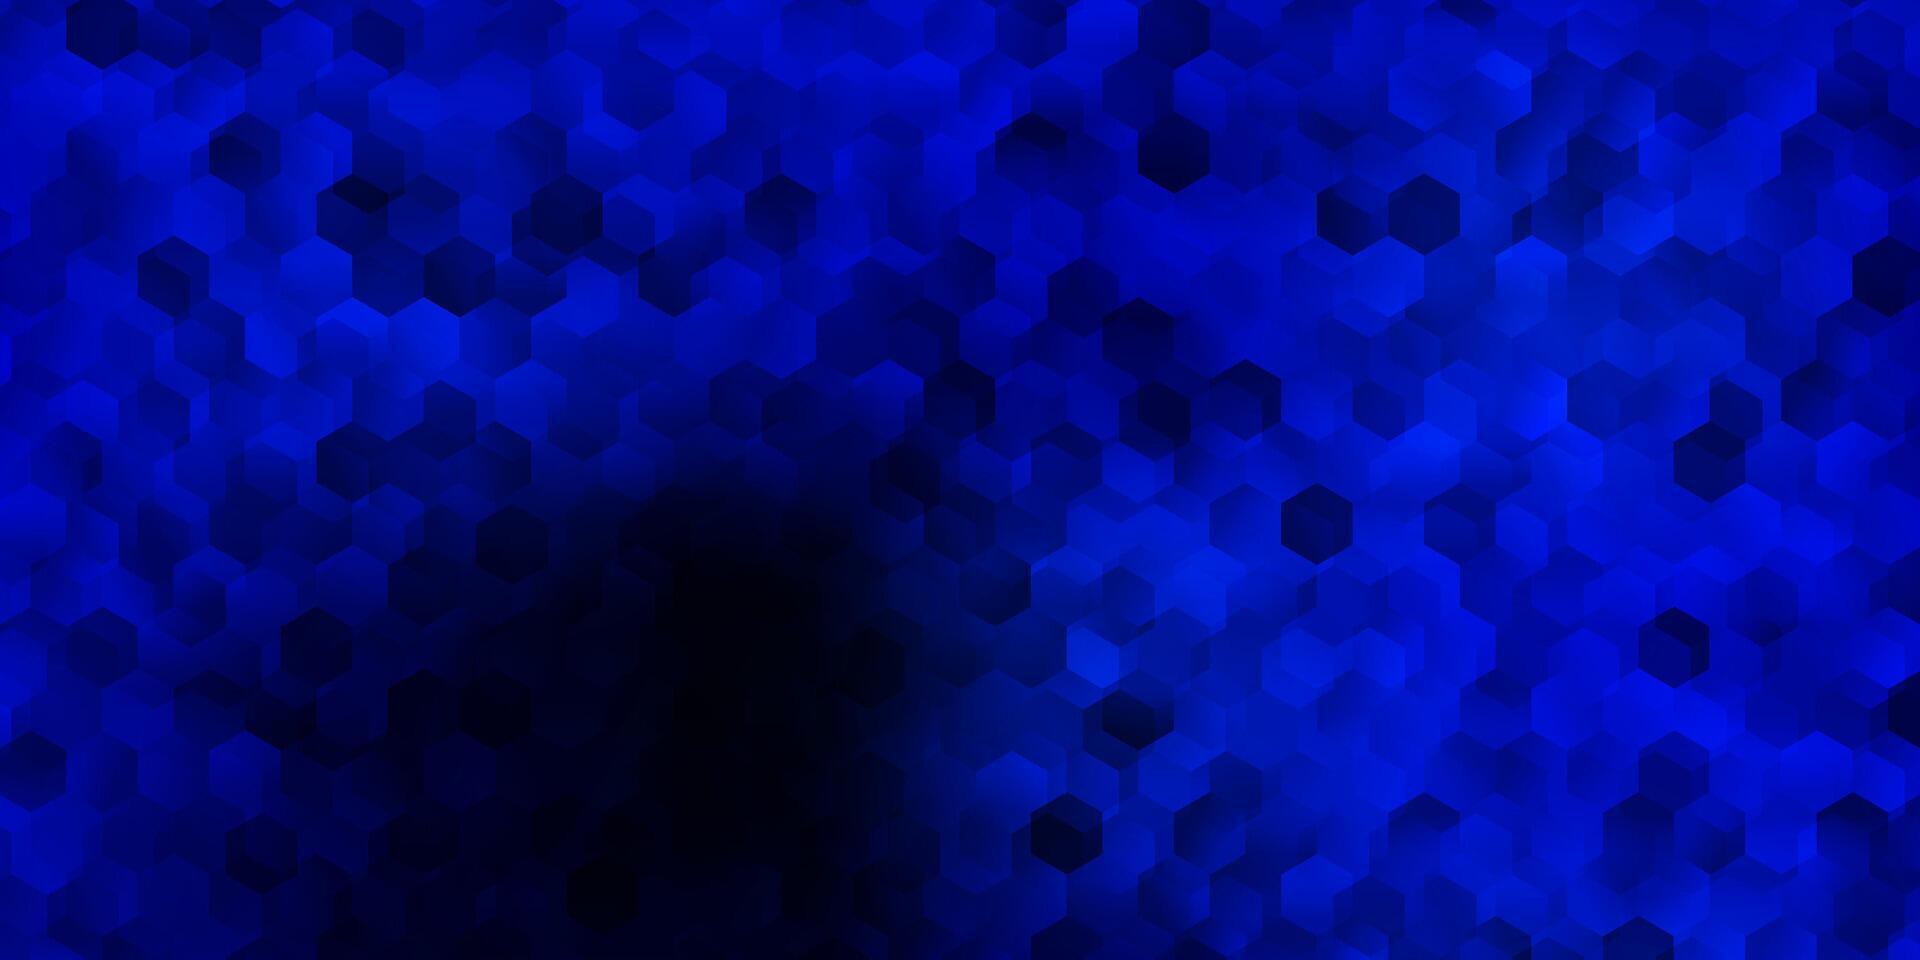 mörkblå vektorbakgrund med sexkantiga former. vektor